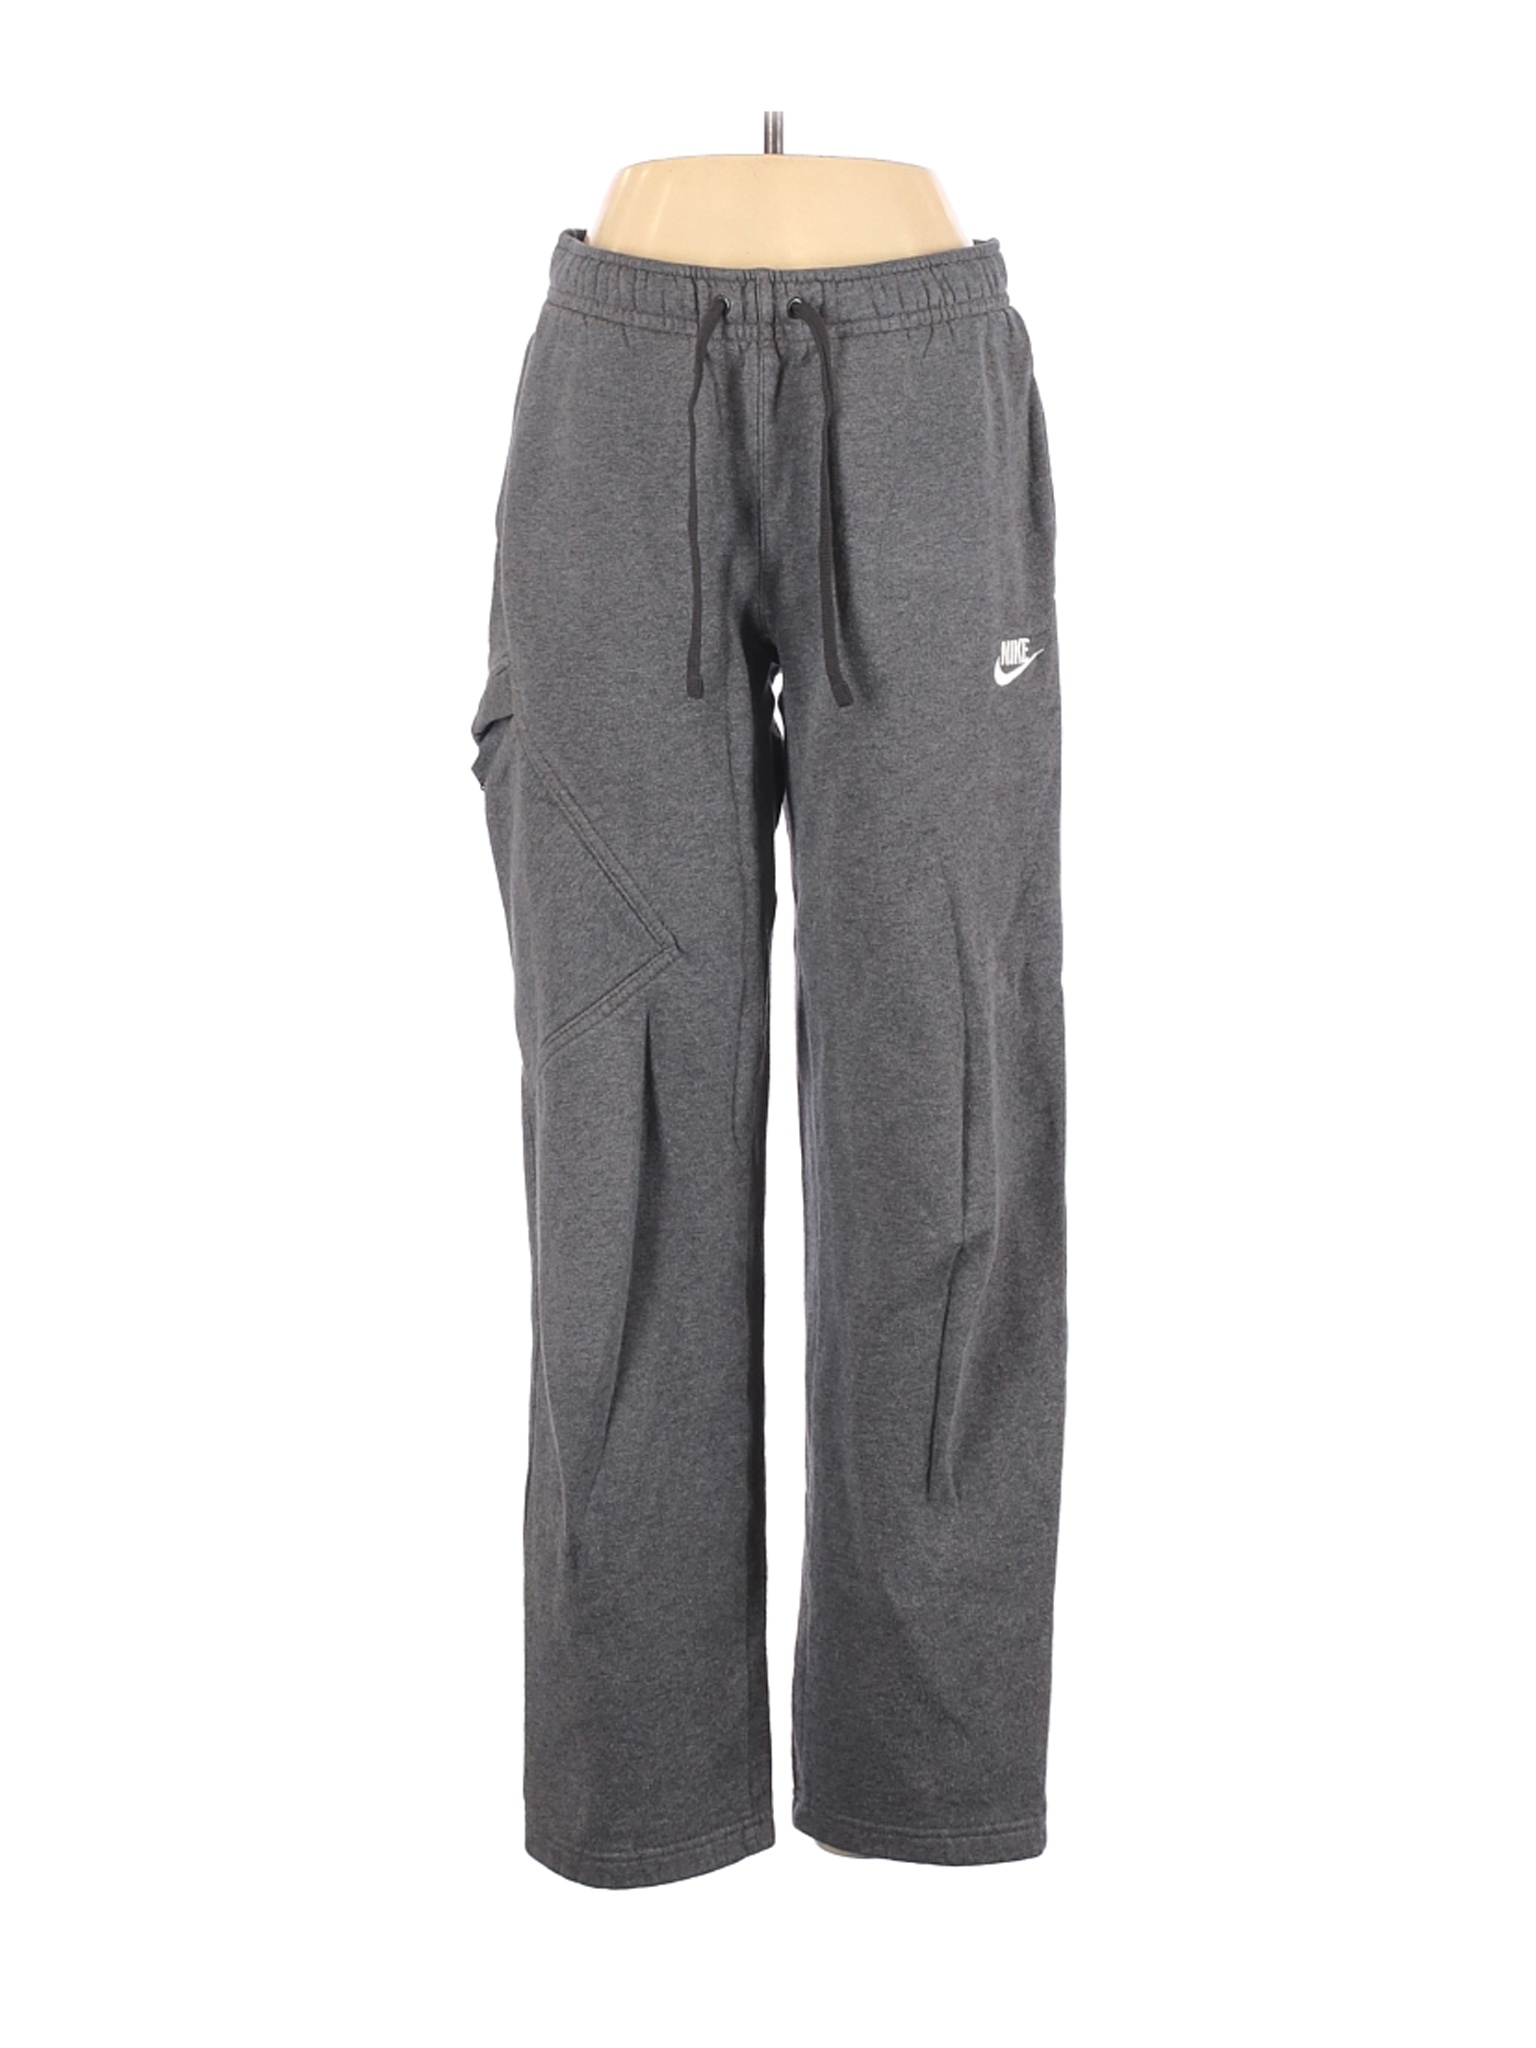 Nike Women Gray Sweatpants S | eBay